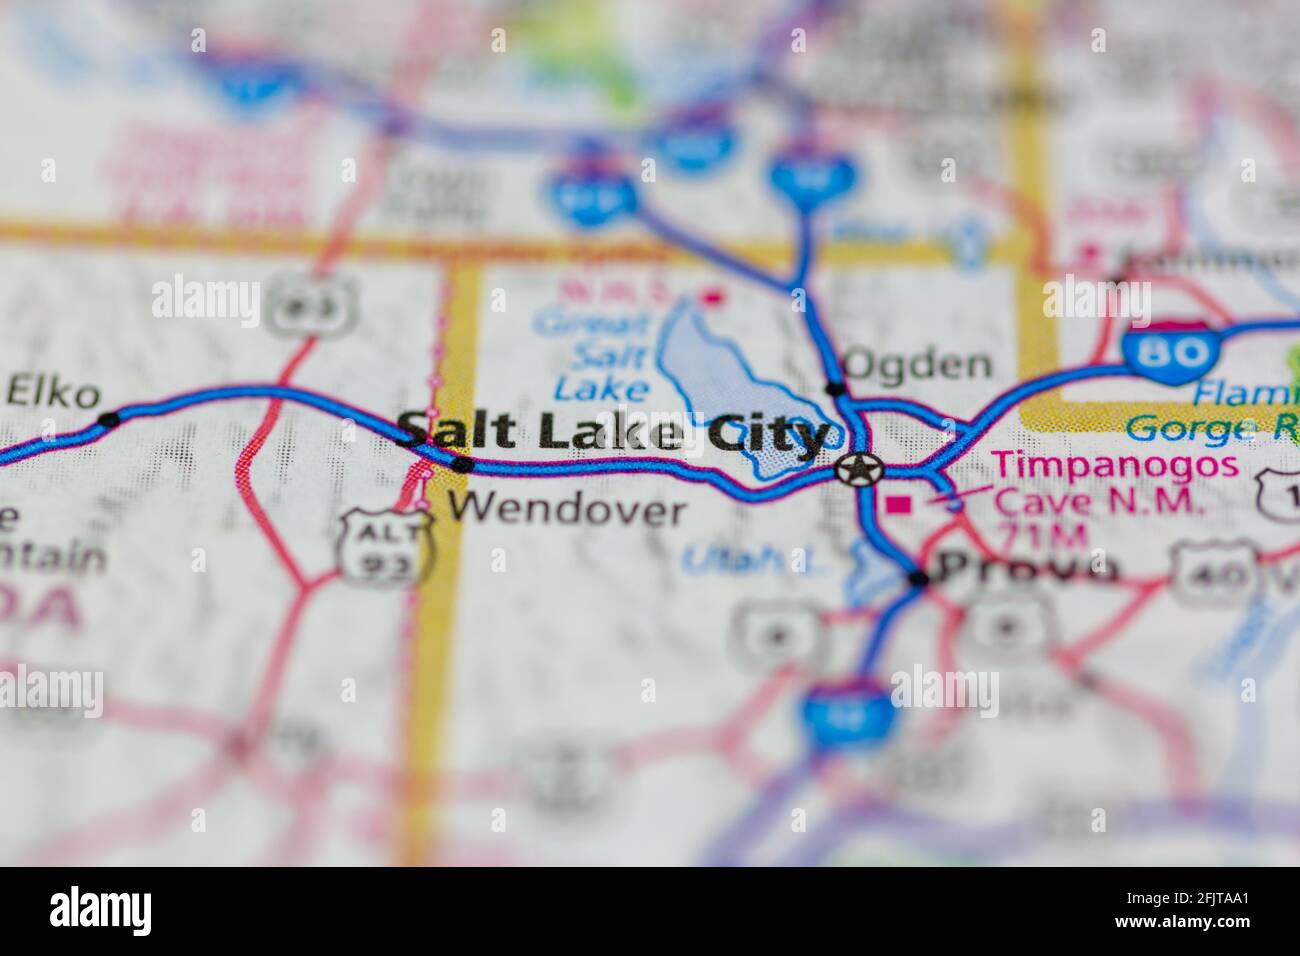 Salt Lake City, Utah e le aree circostanti mostrate su una mappa stradale o su una mappa geografica Foto Stock